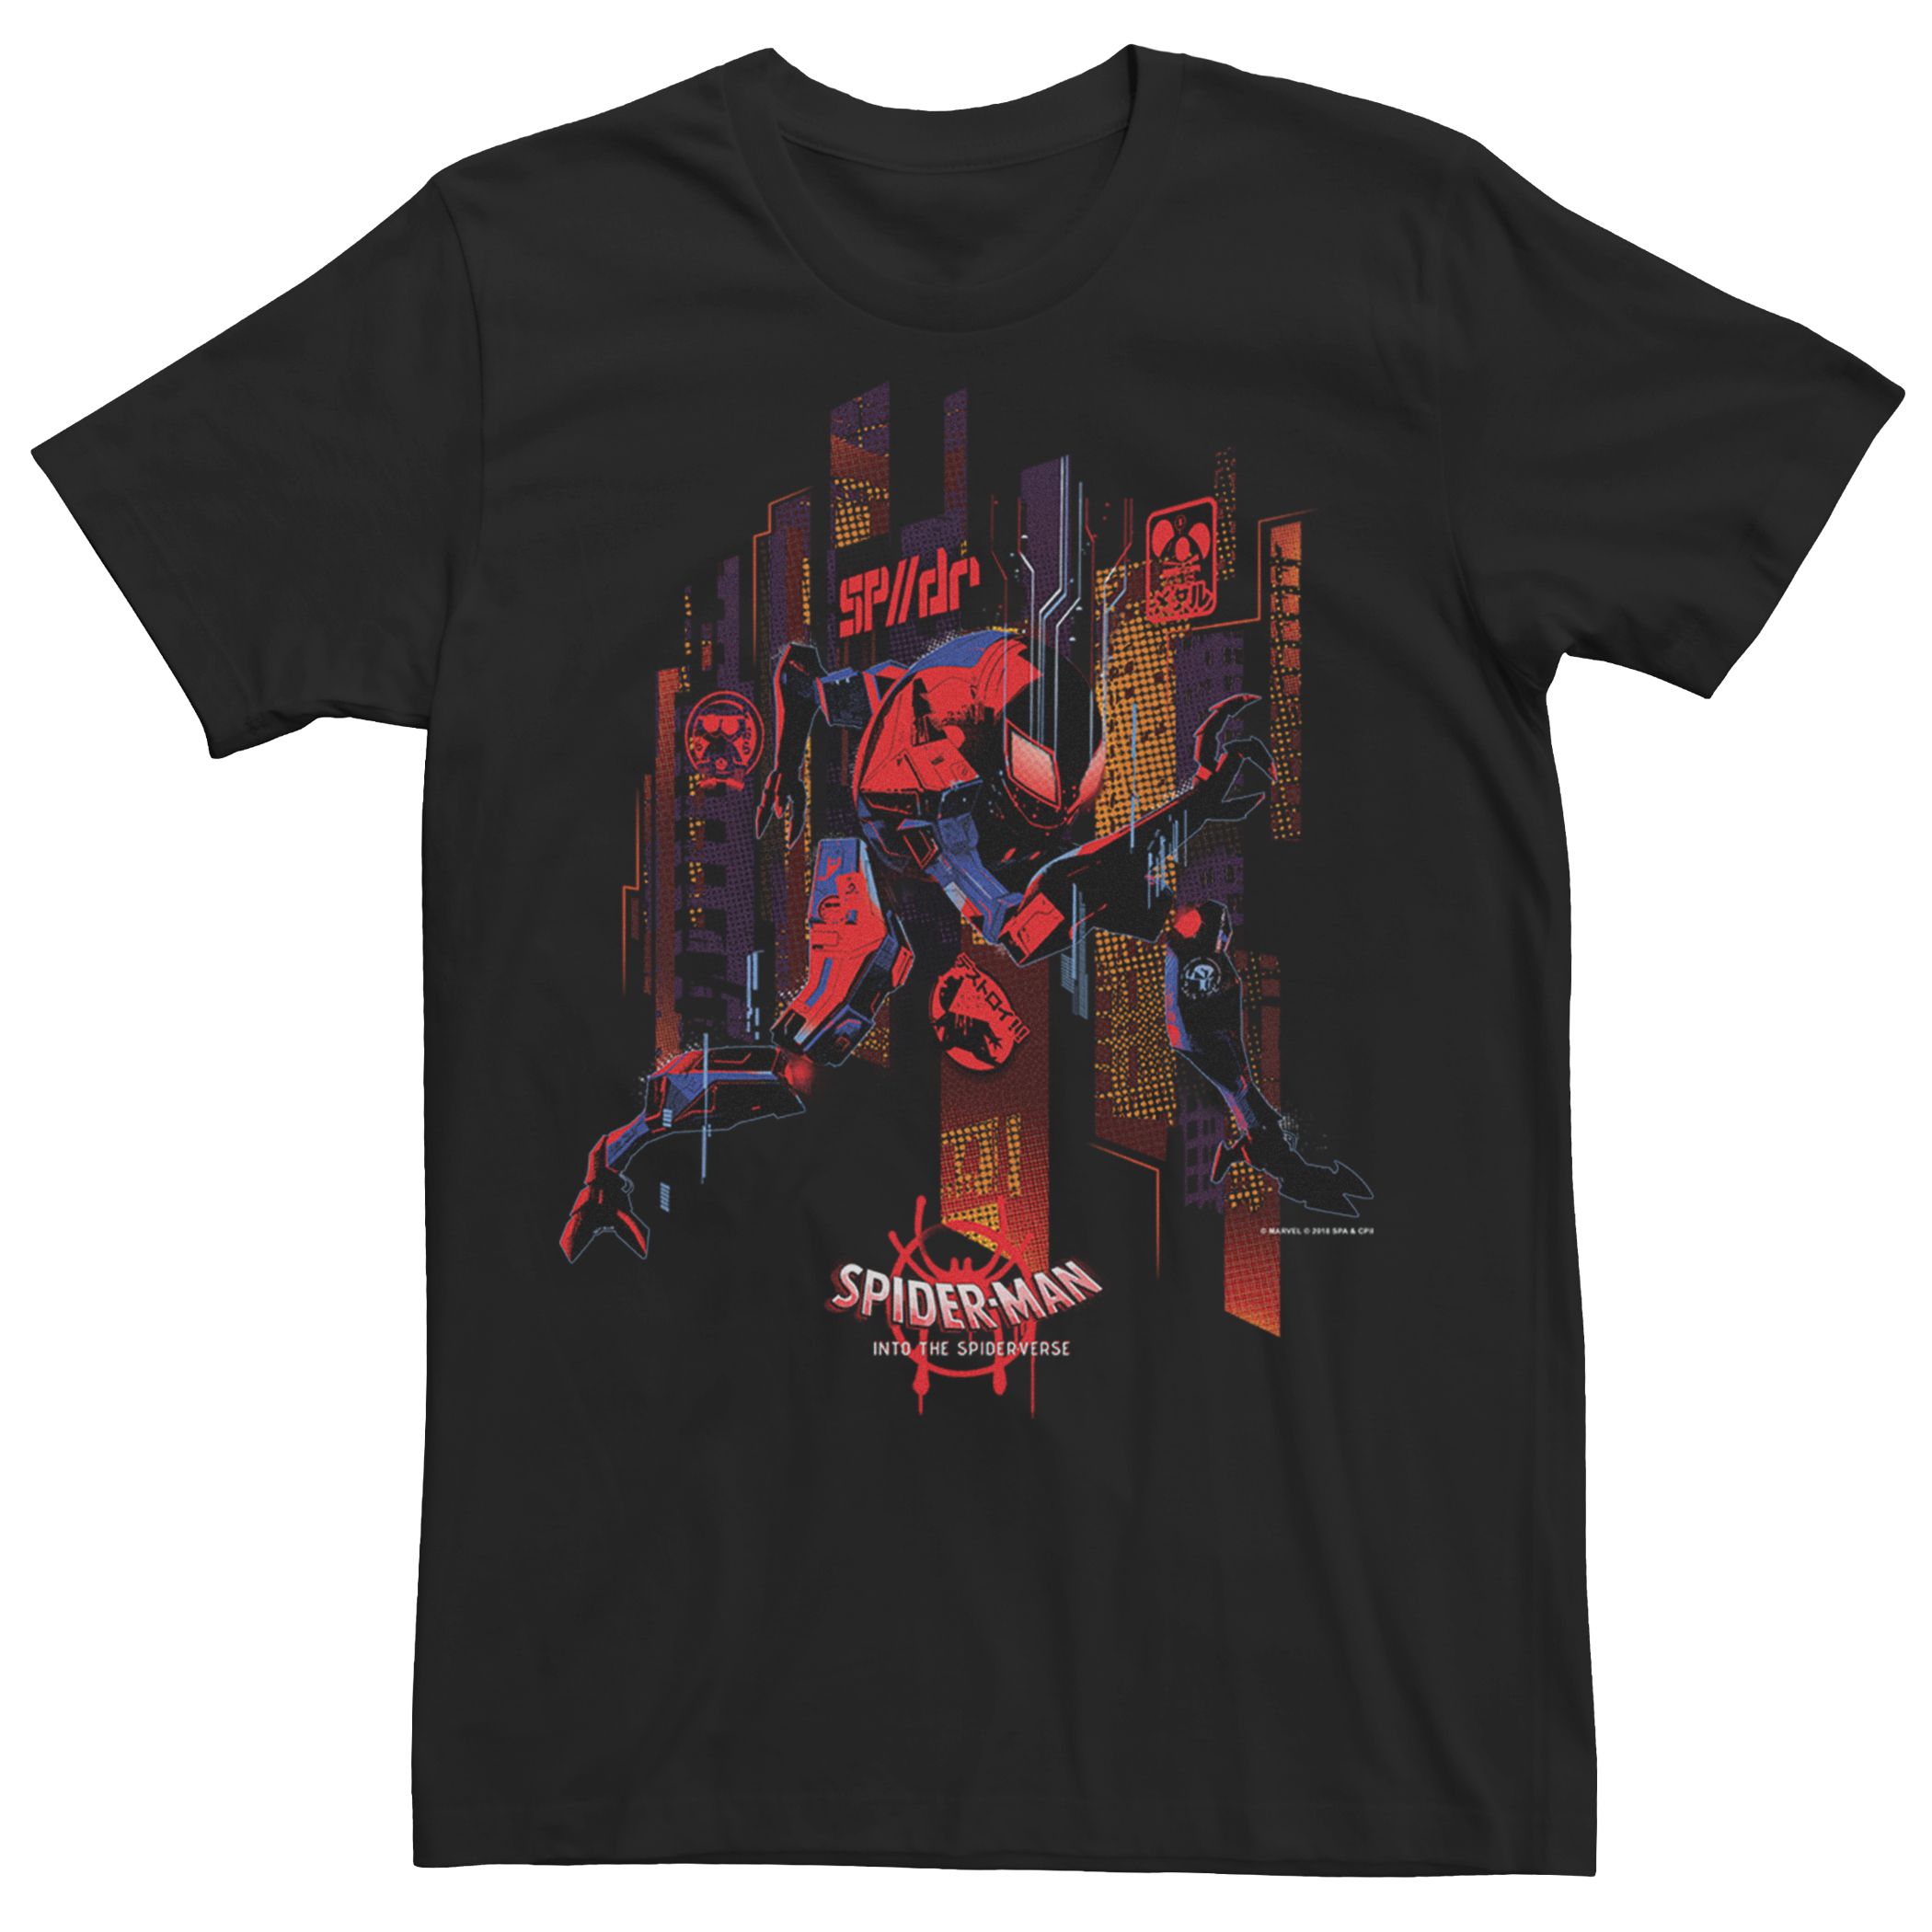 Мужская футболка Spider-Verse Spider-Man 2099 Future Spidey Licensed Character